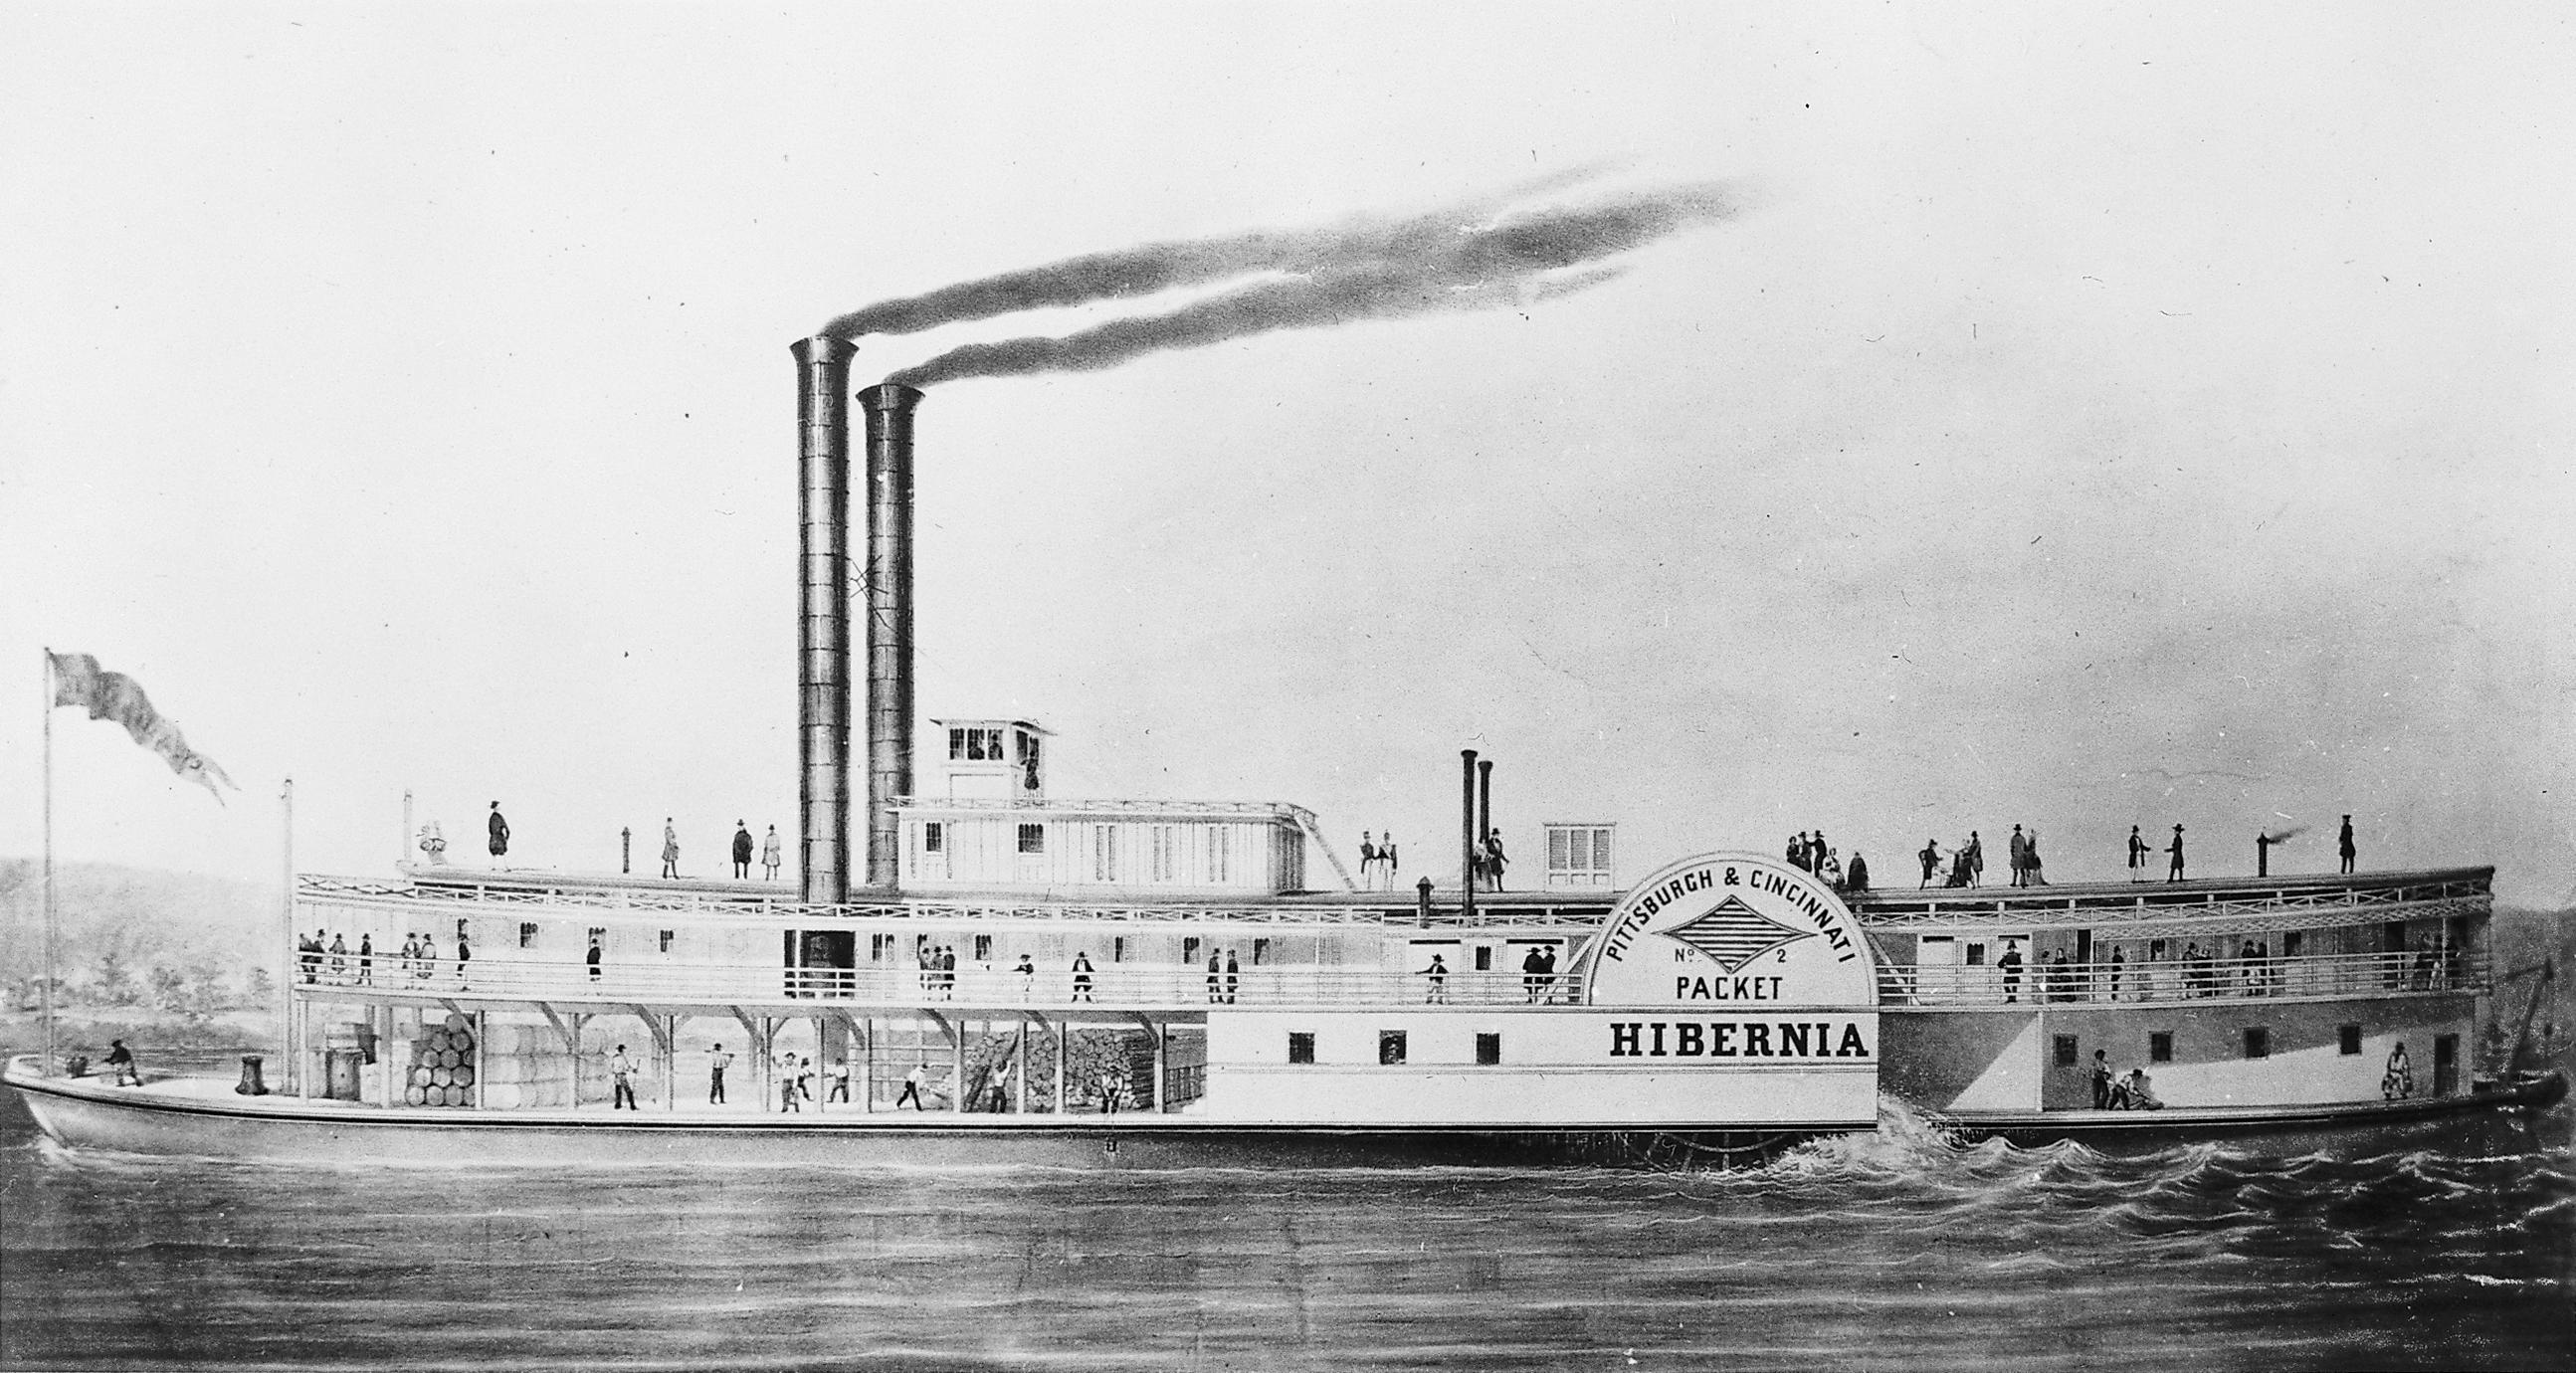 Hibernia (Packet, 1844-1848)